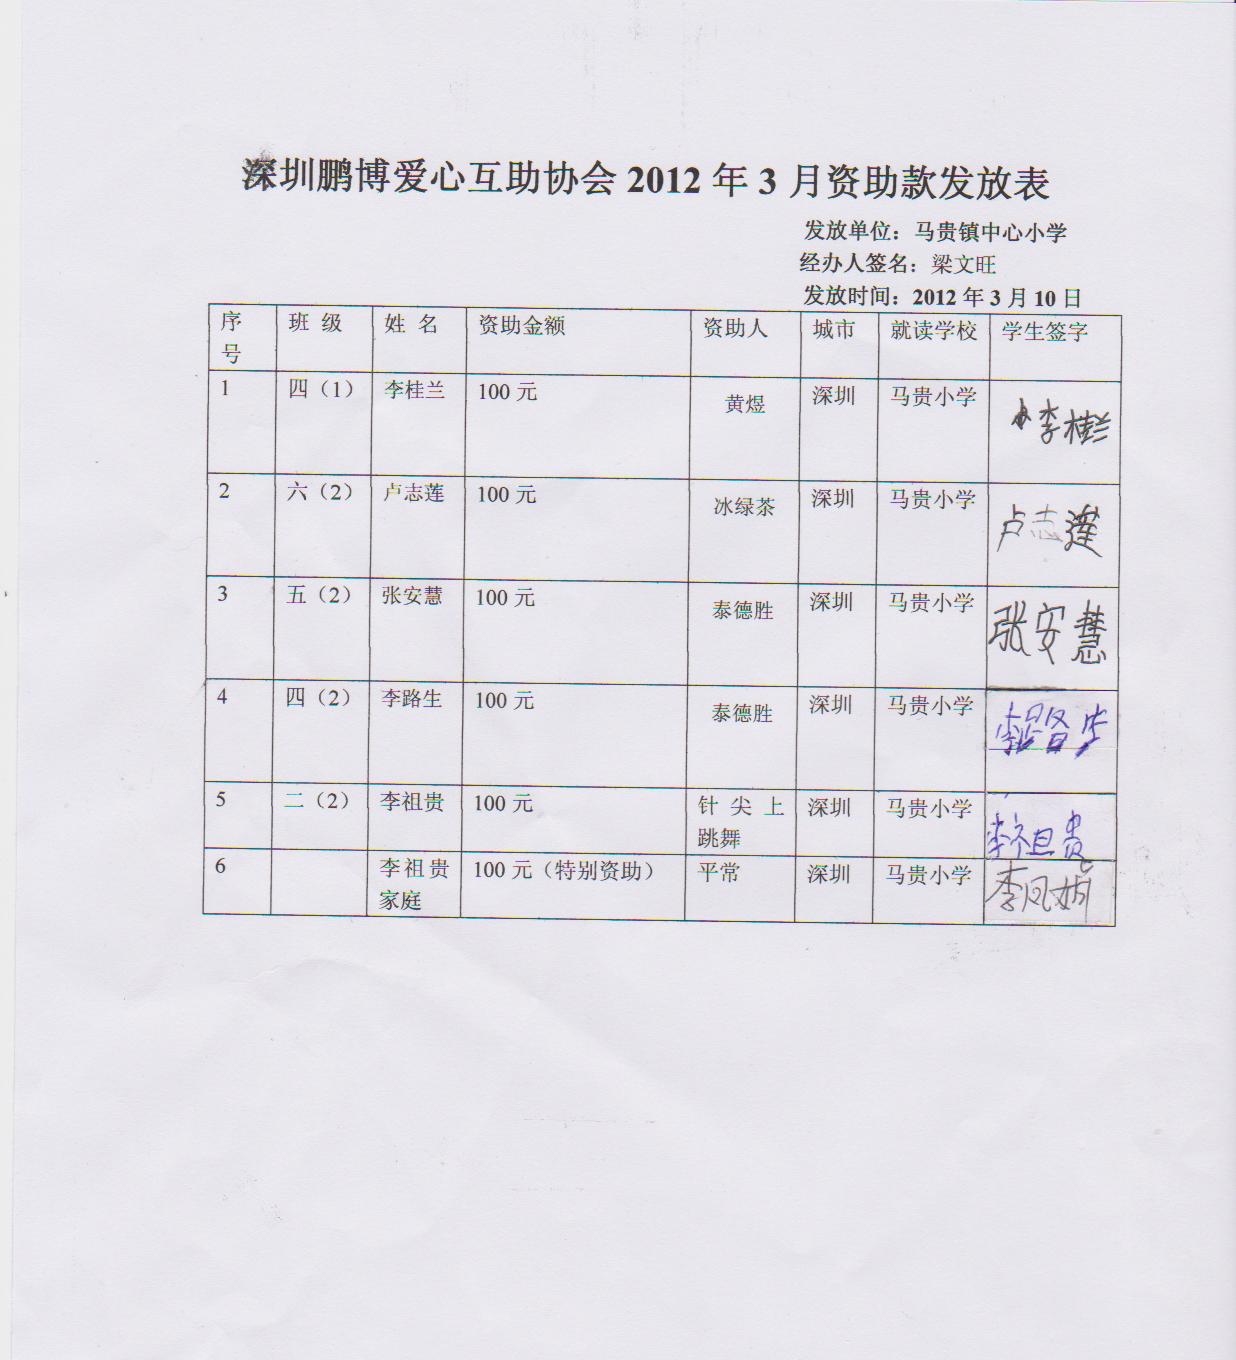 高州马贵小学2012年3月爱心网络支助贫困生签领表.jpg